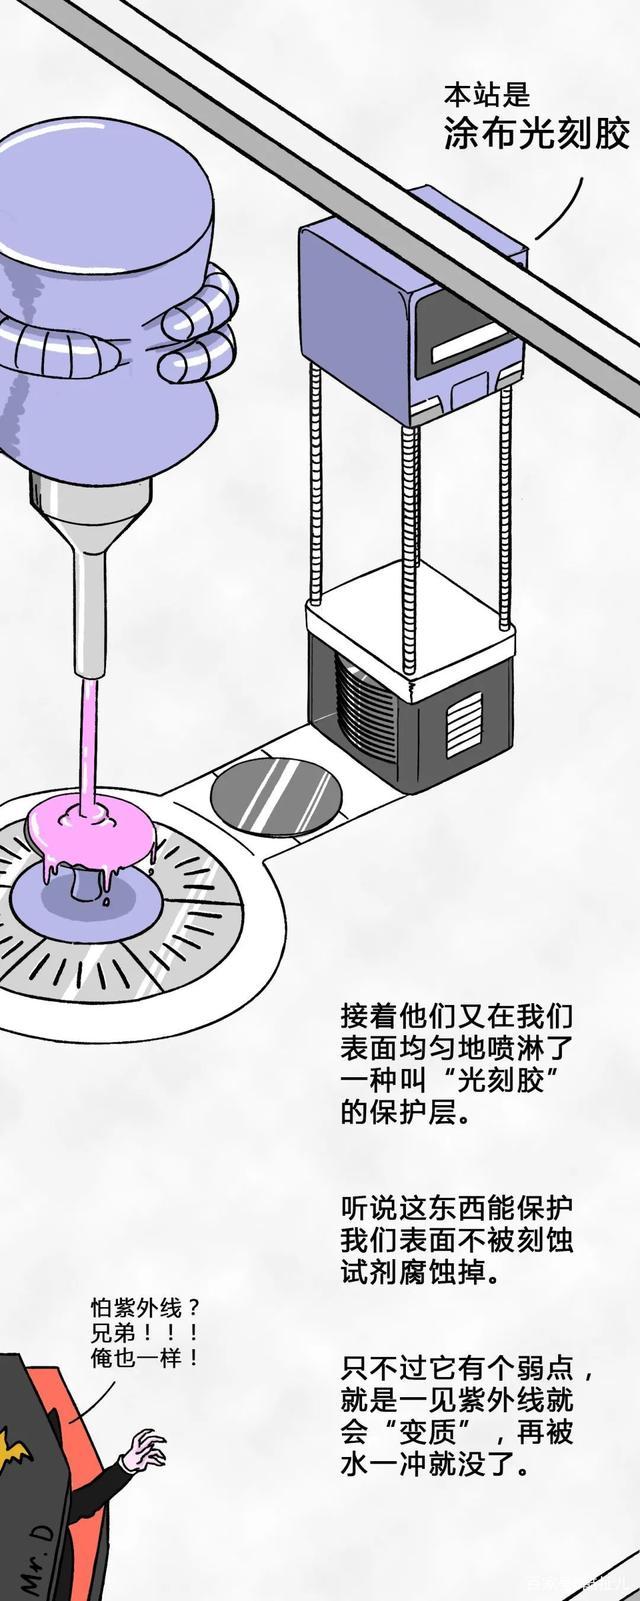 国内芯片技术交流-一粒沙子变成芯片的全过程risc-v单片机中文社区(16)